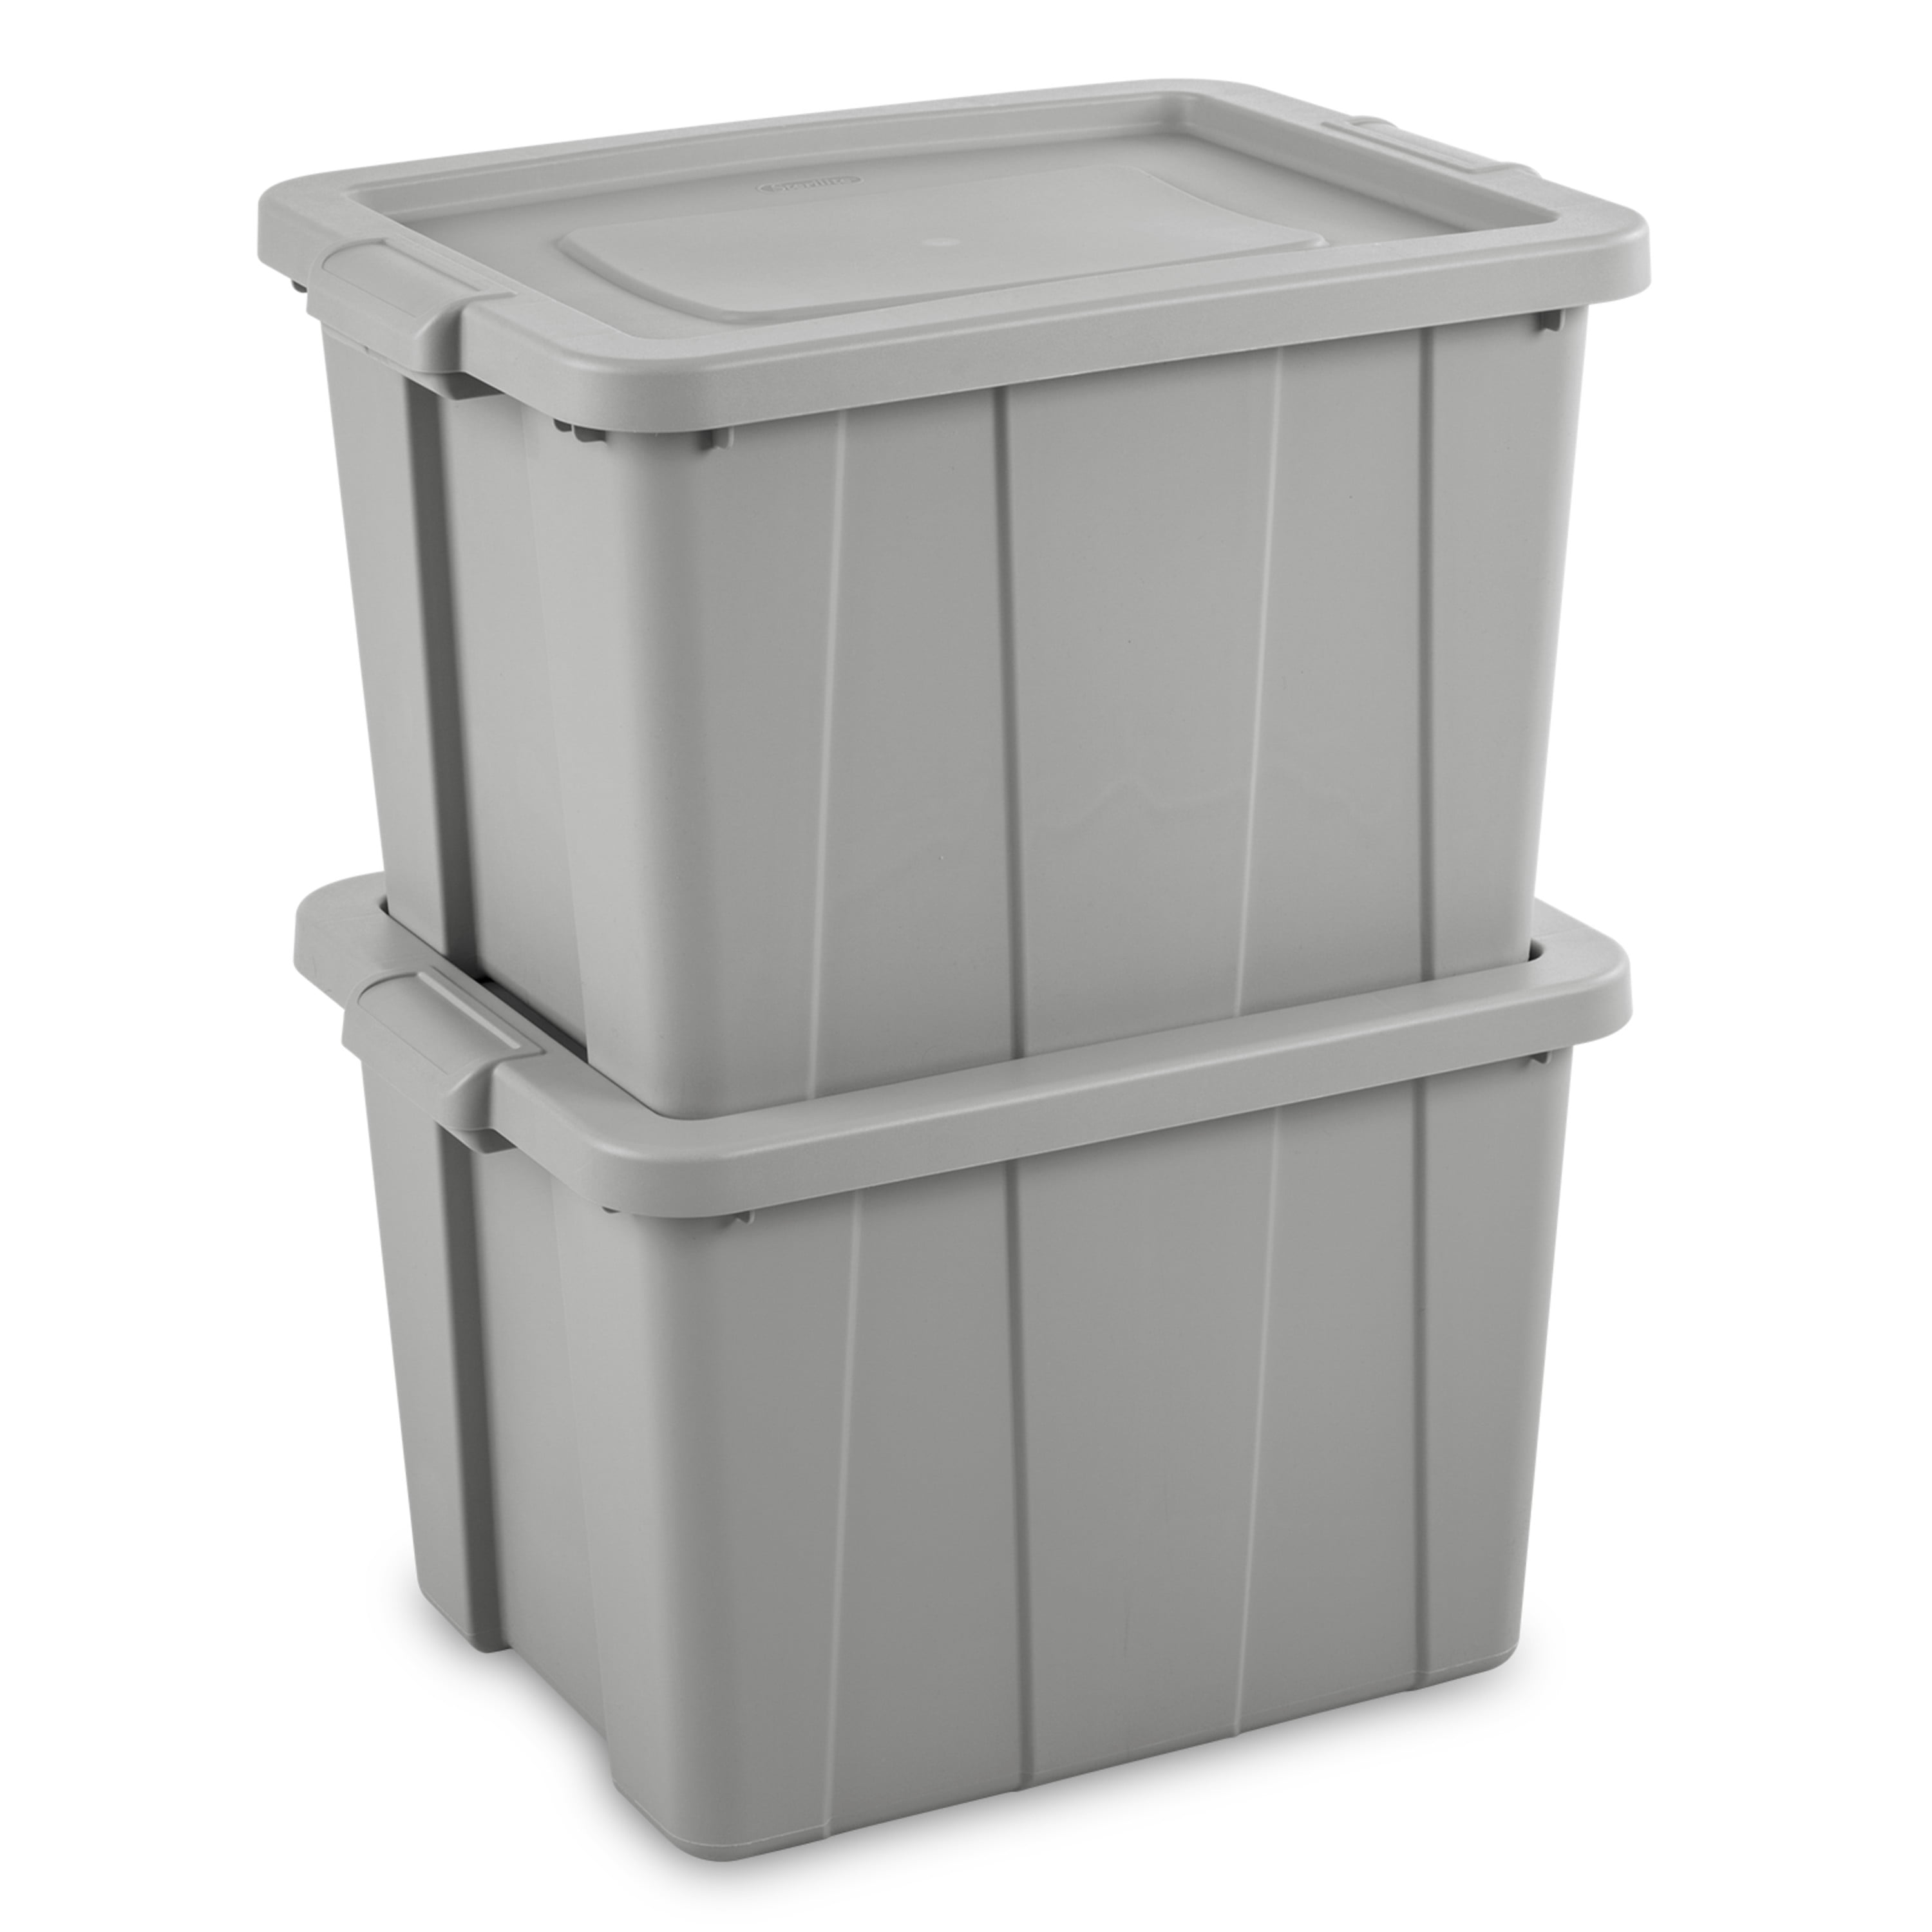 Sterilite Tuff1 18 Gallon Plastic Storage Tote Container Bin with